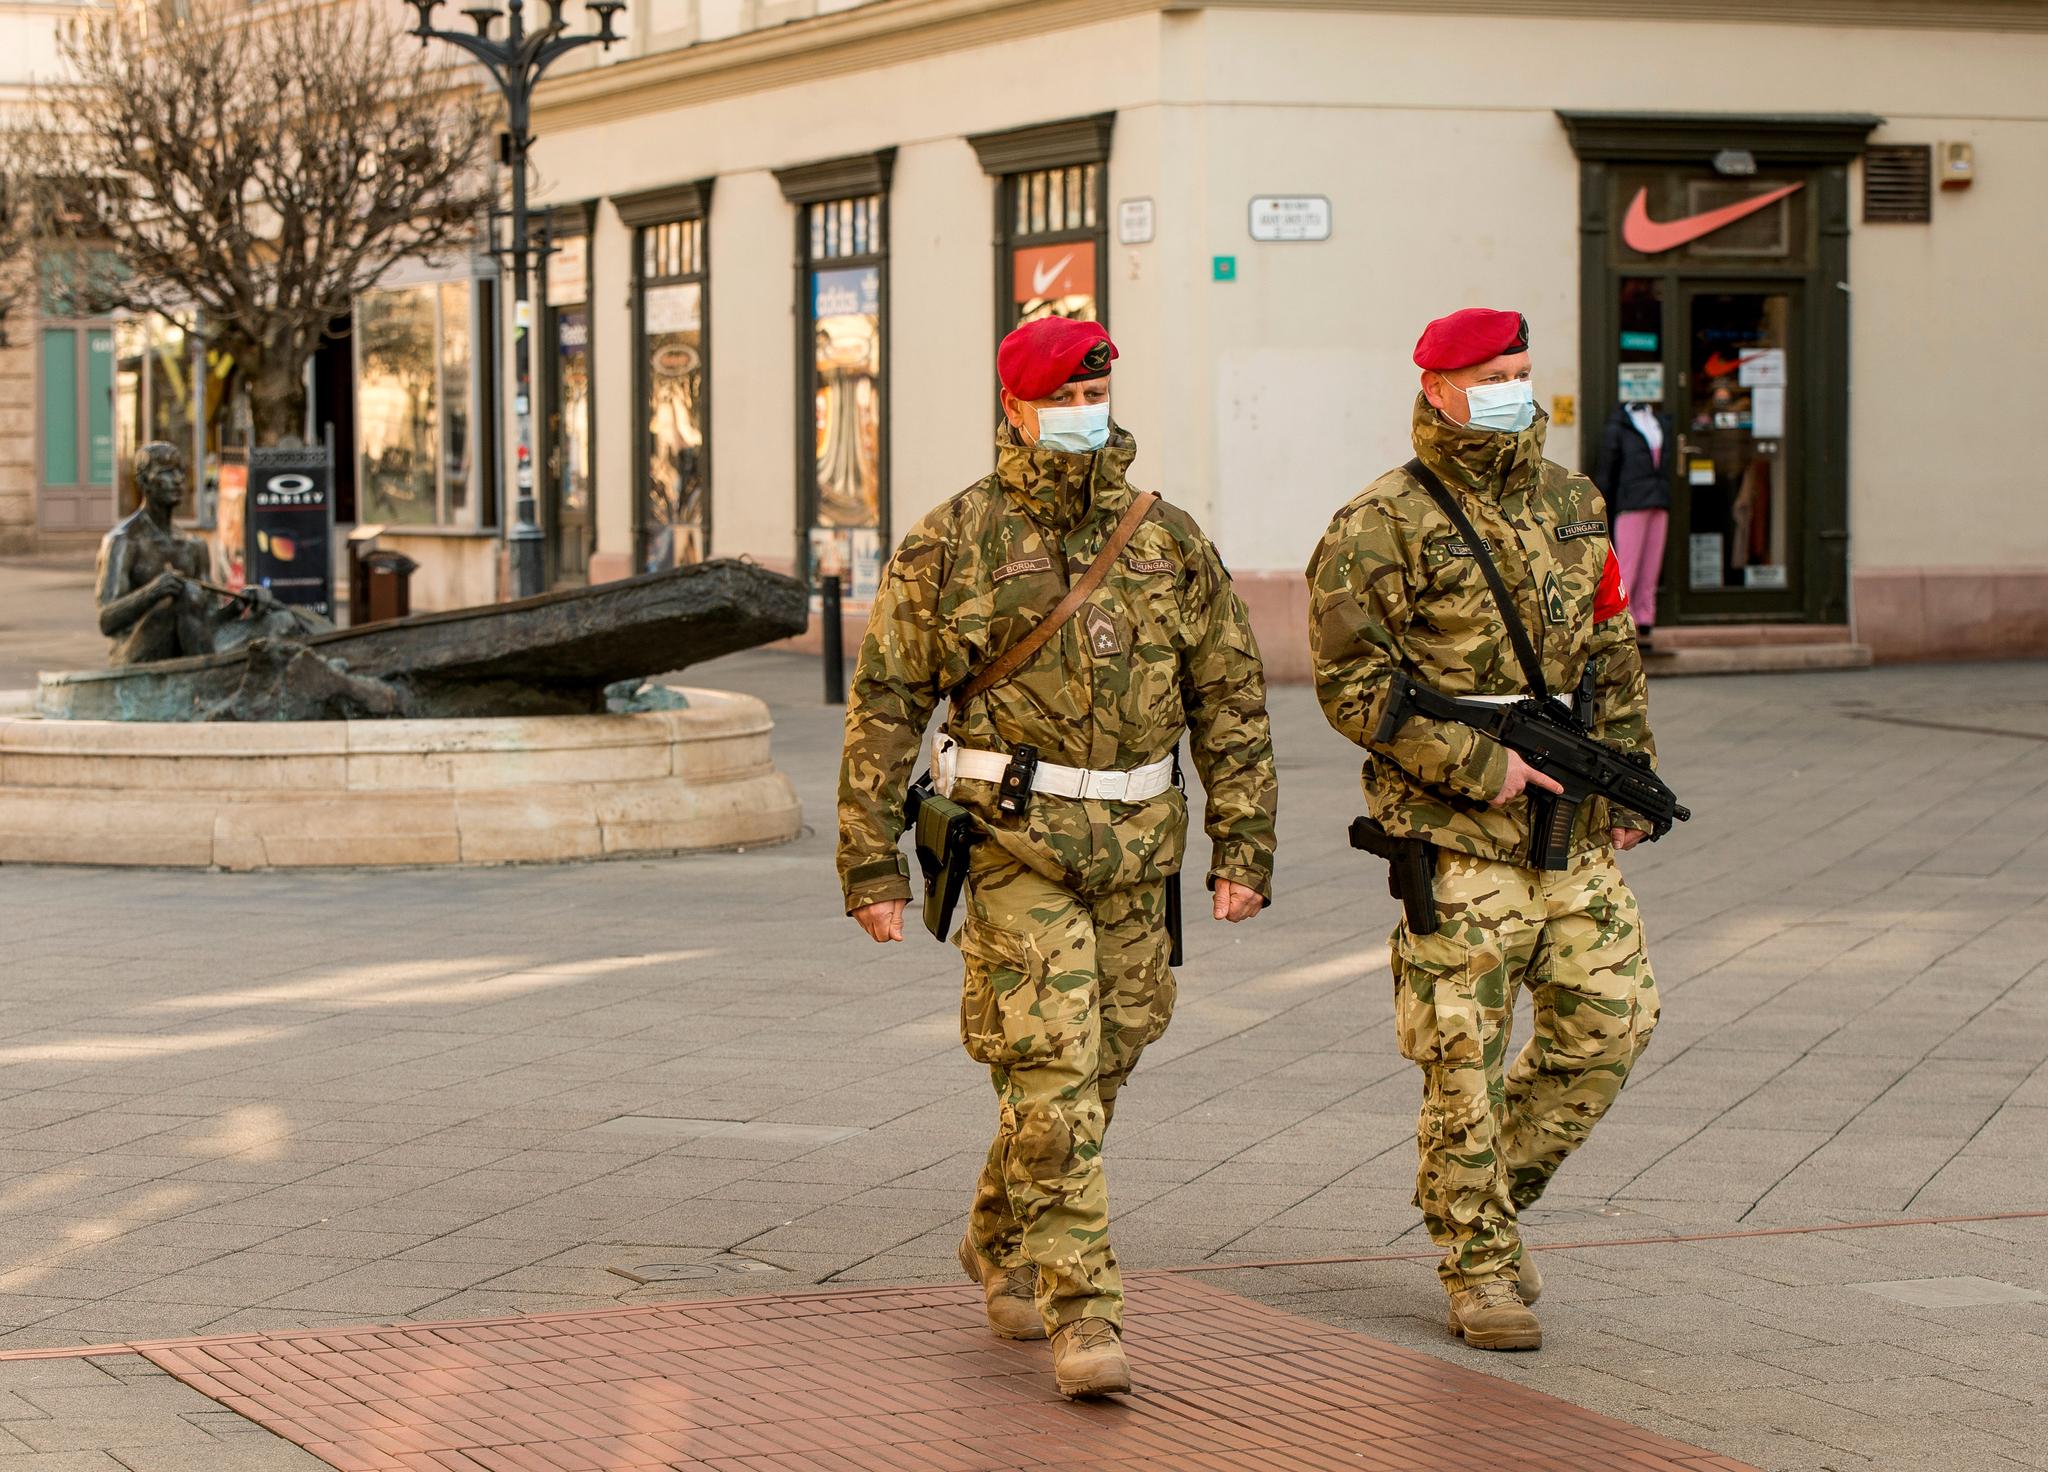 Militæret patruljerer i den ungarske byen Györ mandag 23. mars. Om europeiske land nå ikke står sammen og forsvarer de verdiene vi holder kjær, er jeg redd for at et annet virus kommer til å spre seg blant oss, skriver Csilla Czimbalmos.